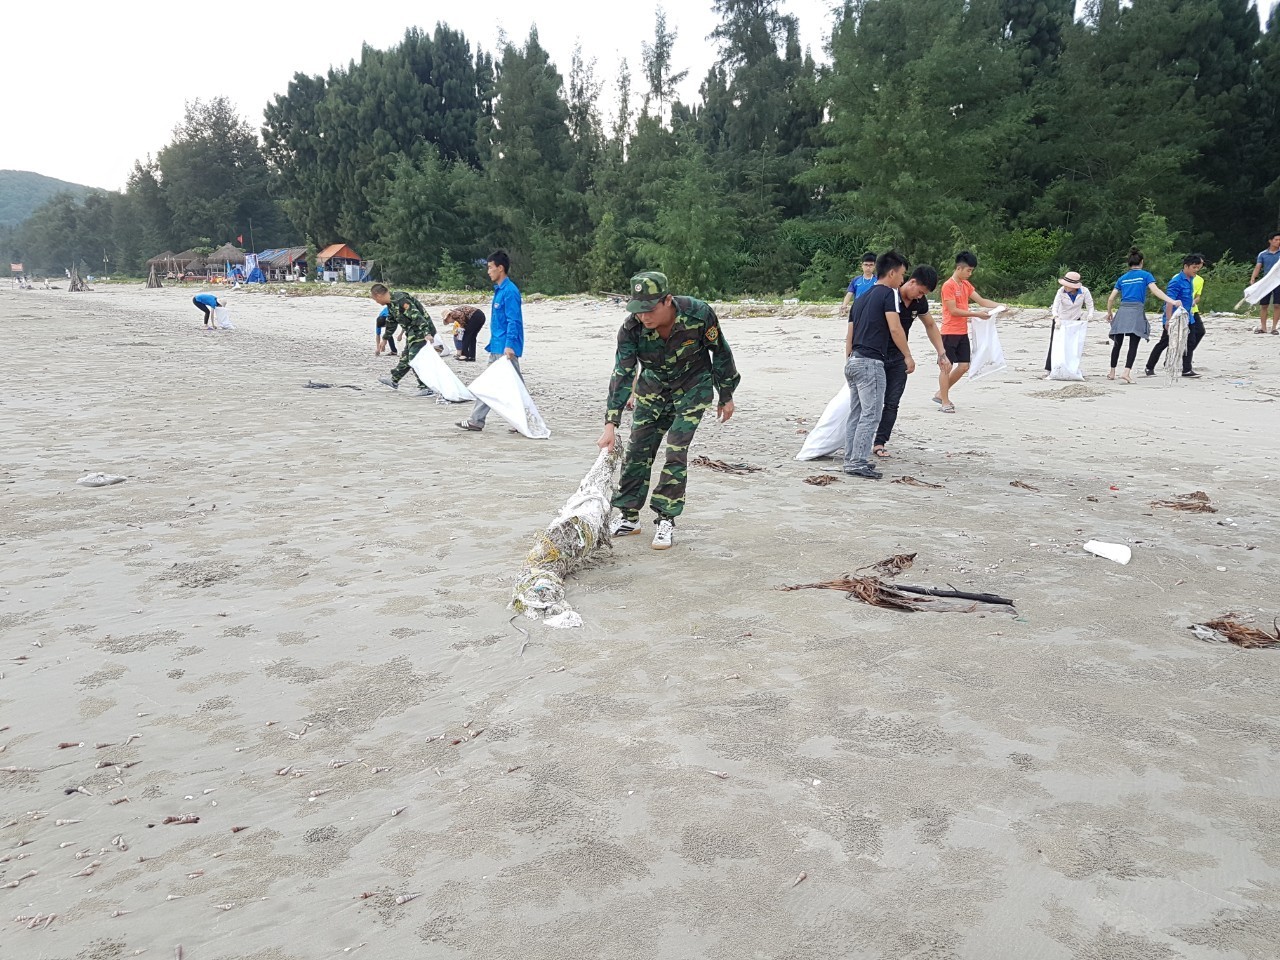 Cán bộ chiến sĩ Đồn BP Ngọc Vừng cùng đoàn thanh niên xã Ngọc Vừng dọn rác trôi dạt vào bãi biển Trường Chinh thôn  Bình Ngọc xã Ngọc Vừng vào tháng 6/2019.